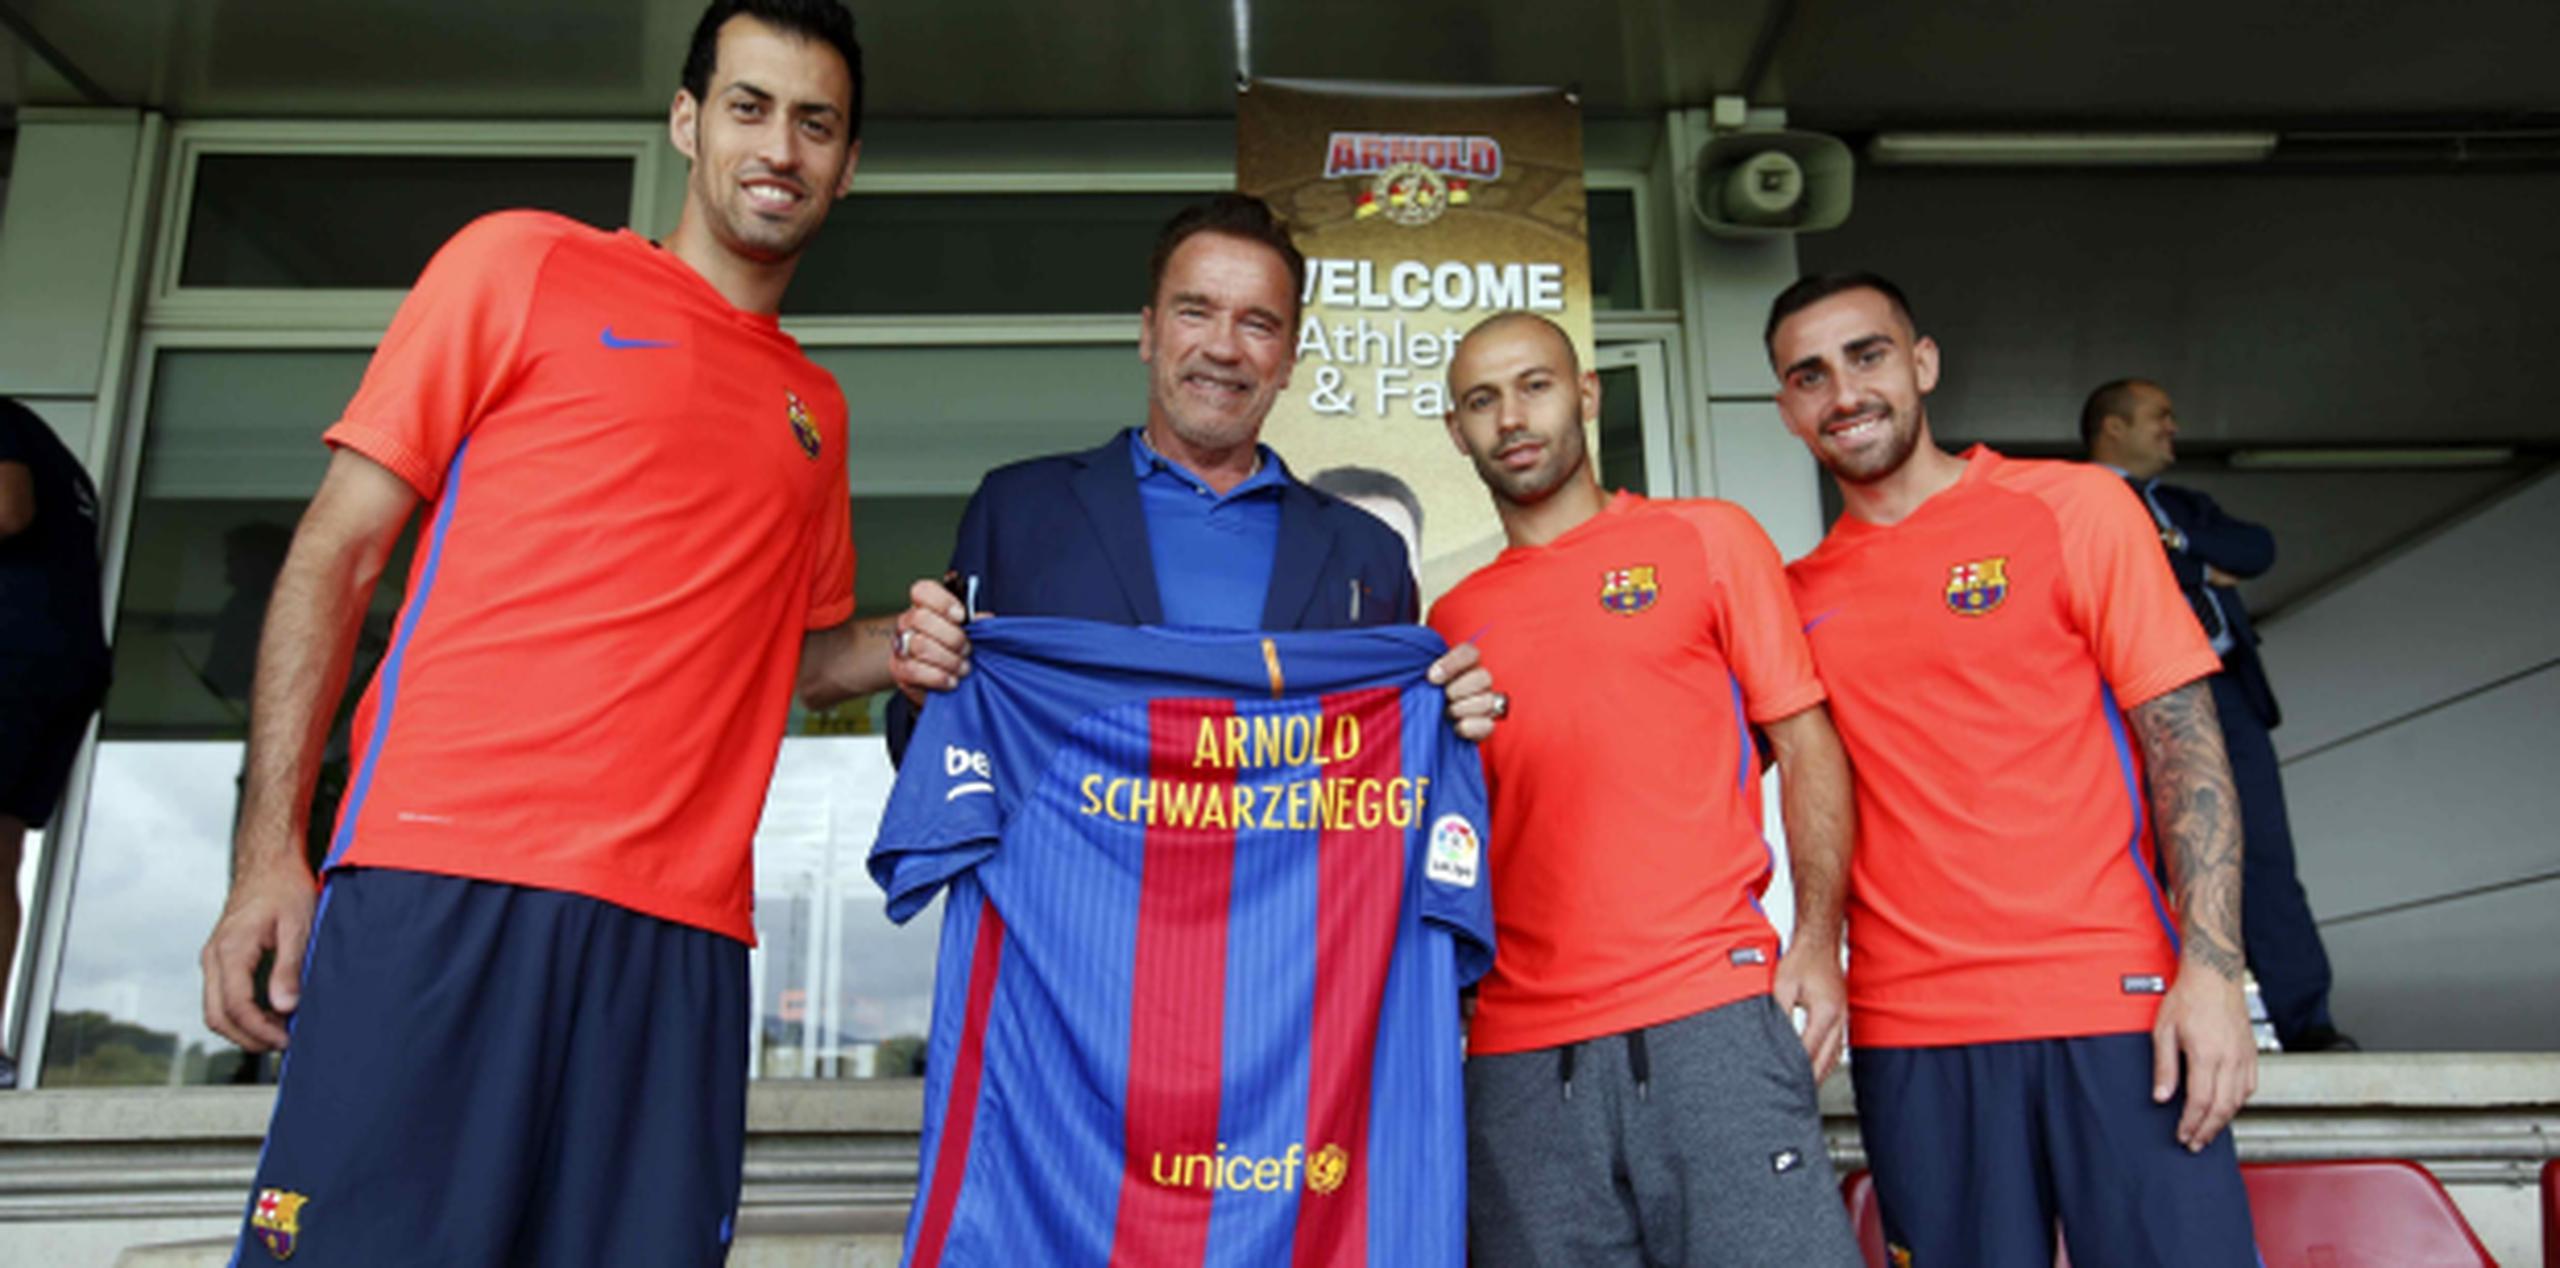 El actor Arnold Schwarzenegger recibió una camiseta con su nombre durante su visita a los jugadores del Barcelona. (EFE)